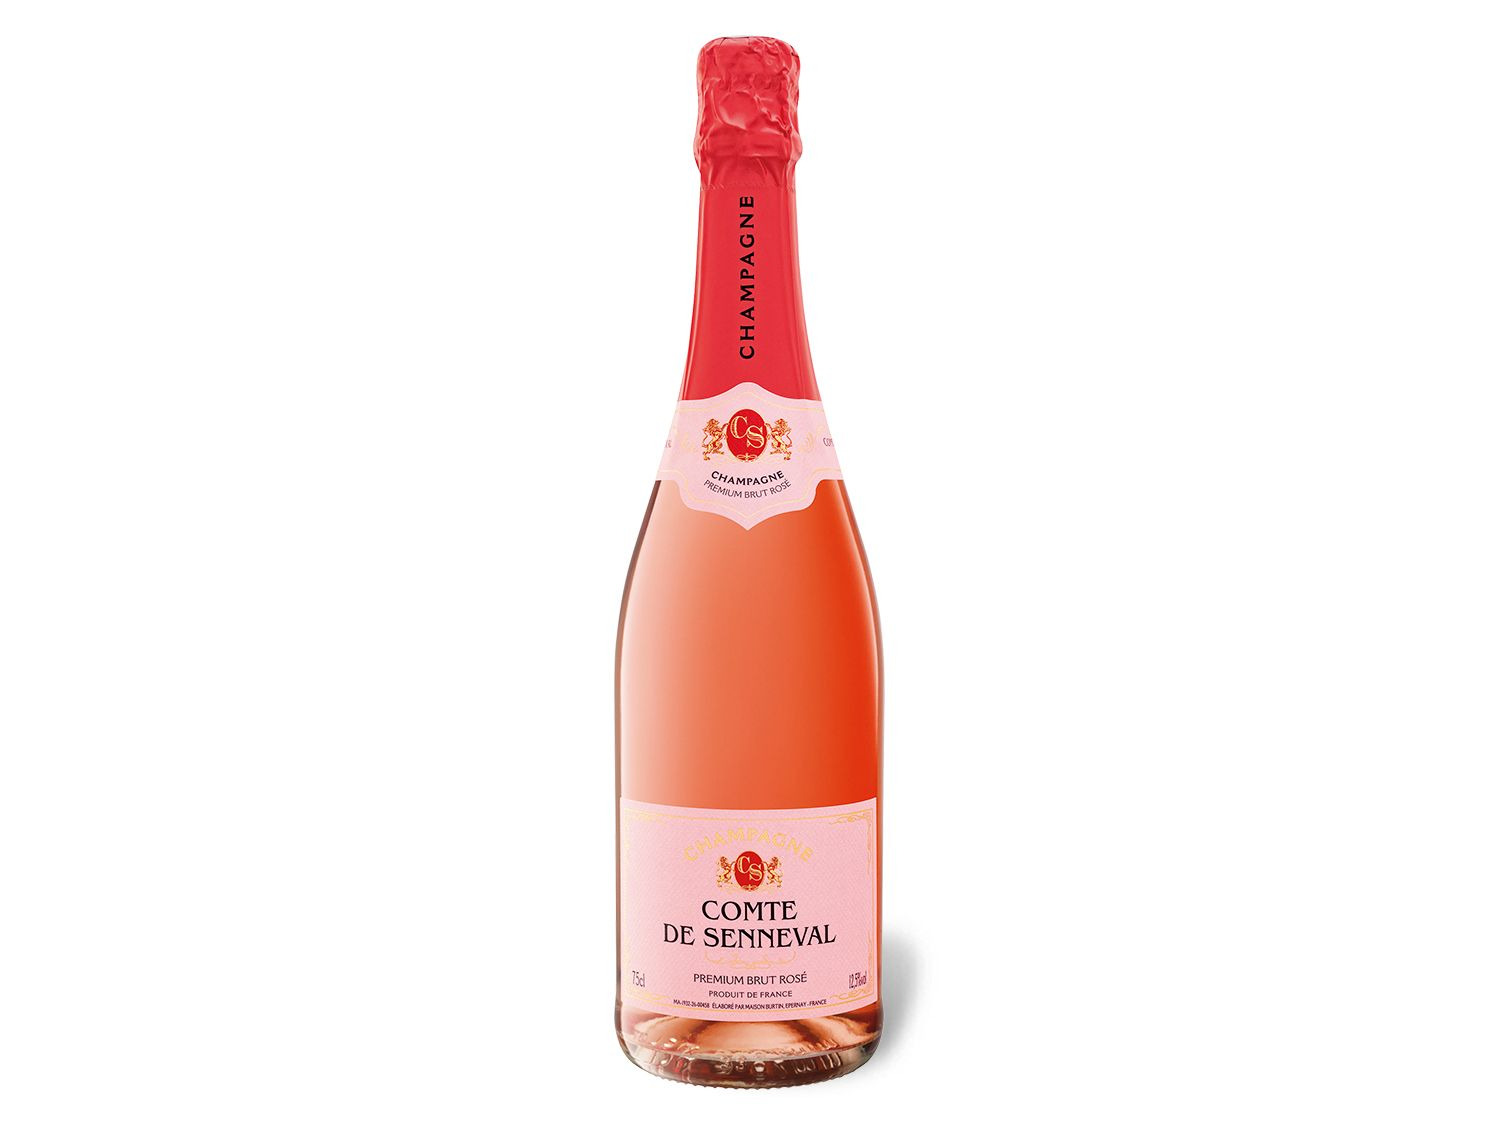 Comte de Senneval Premium Brut Rosé, Champagner | LIDL